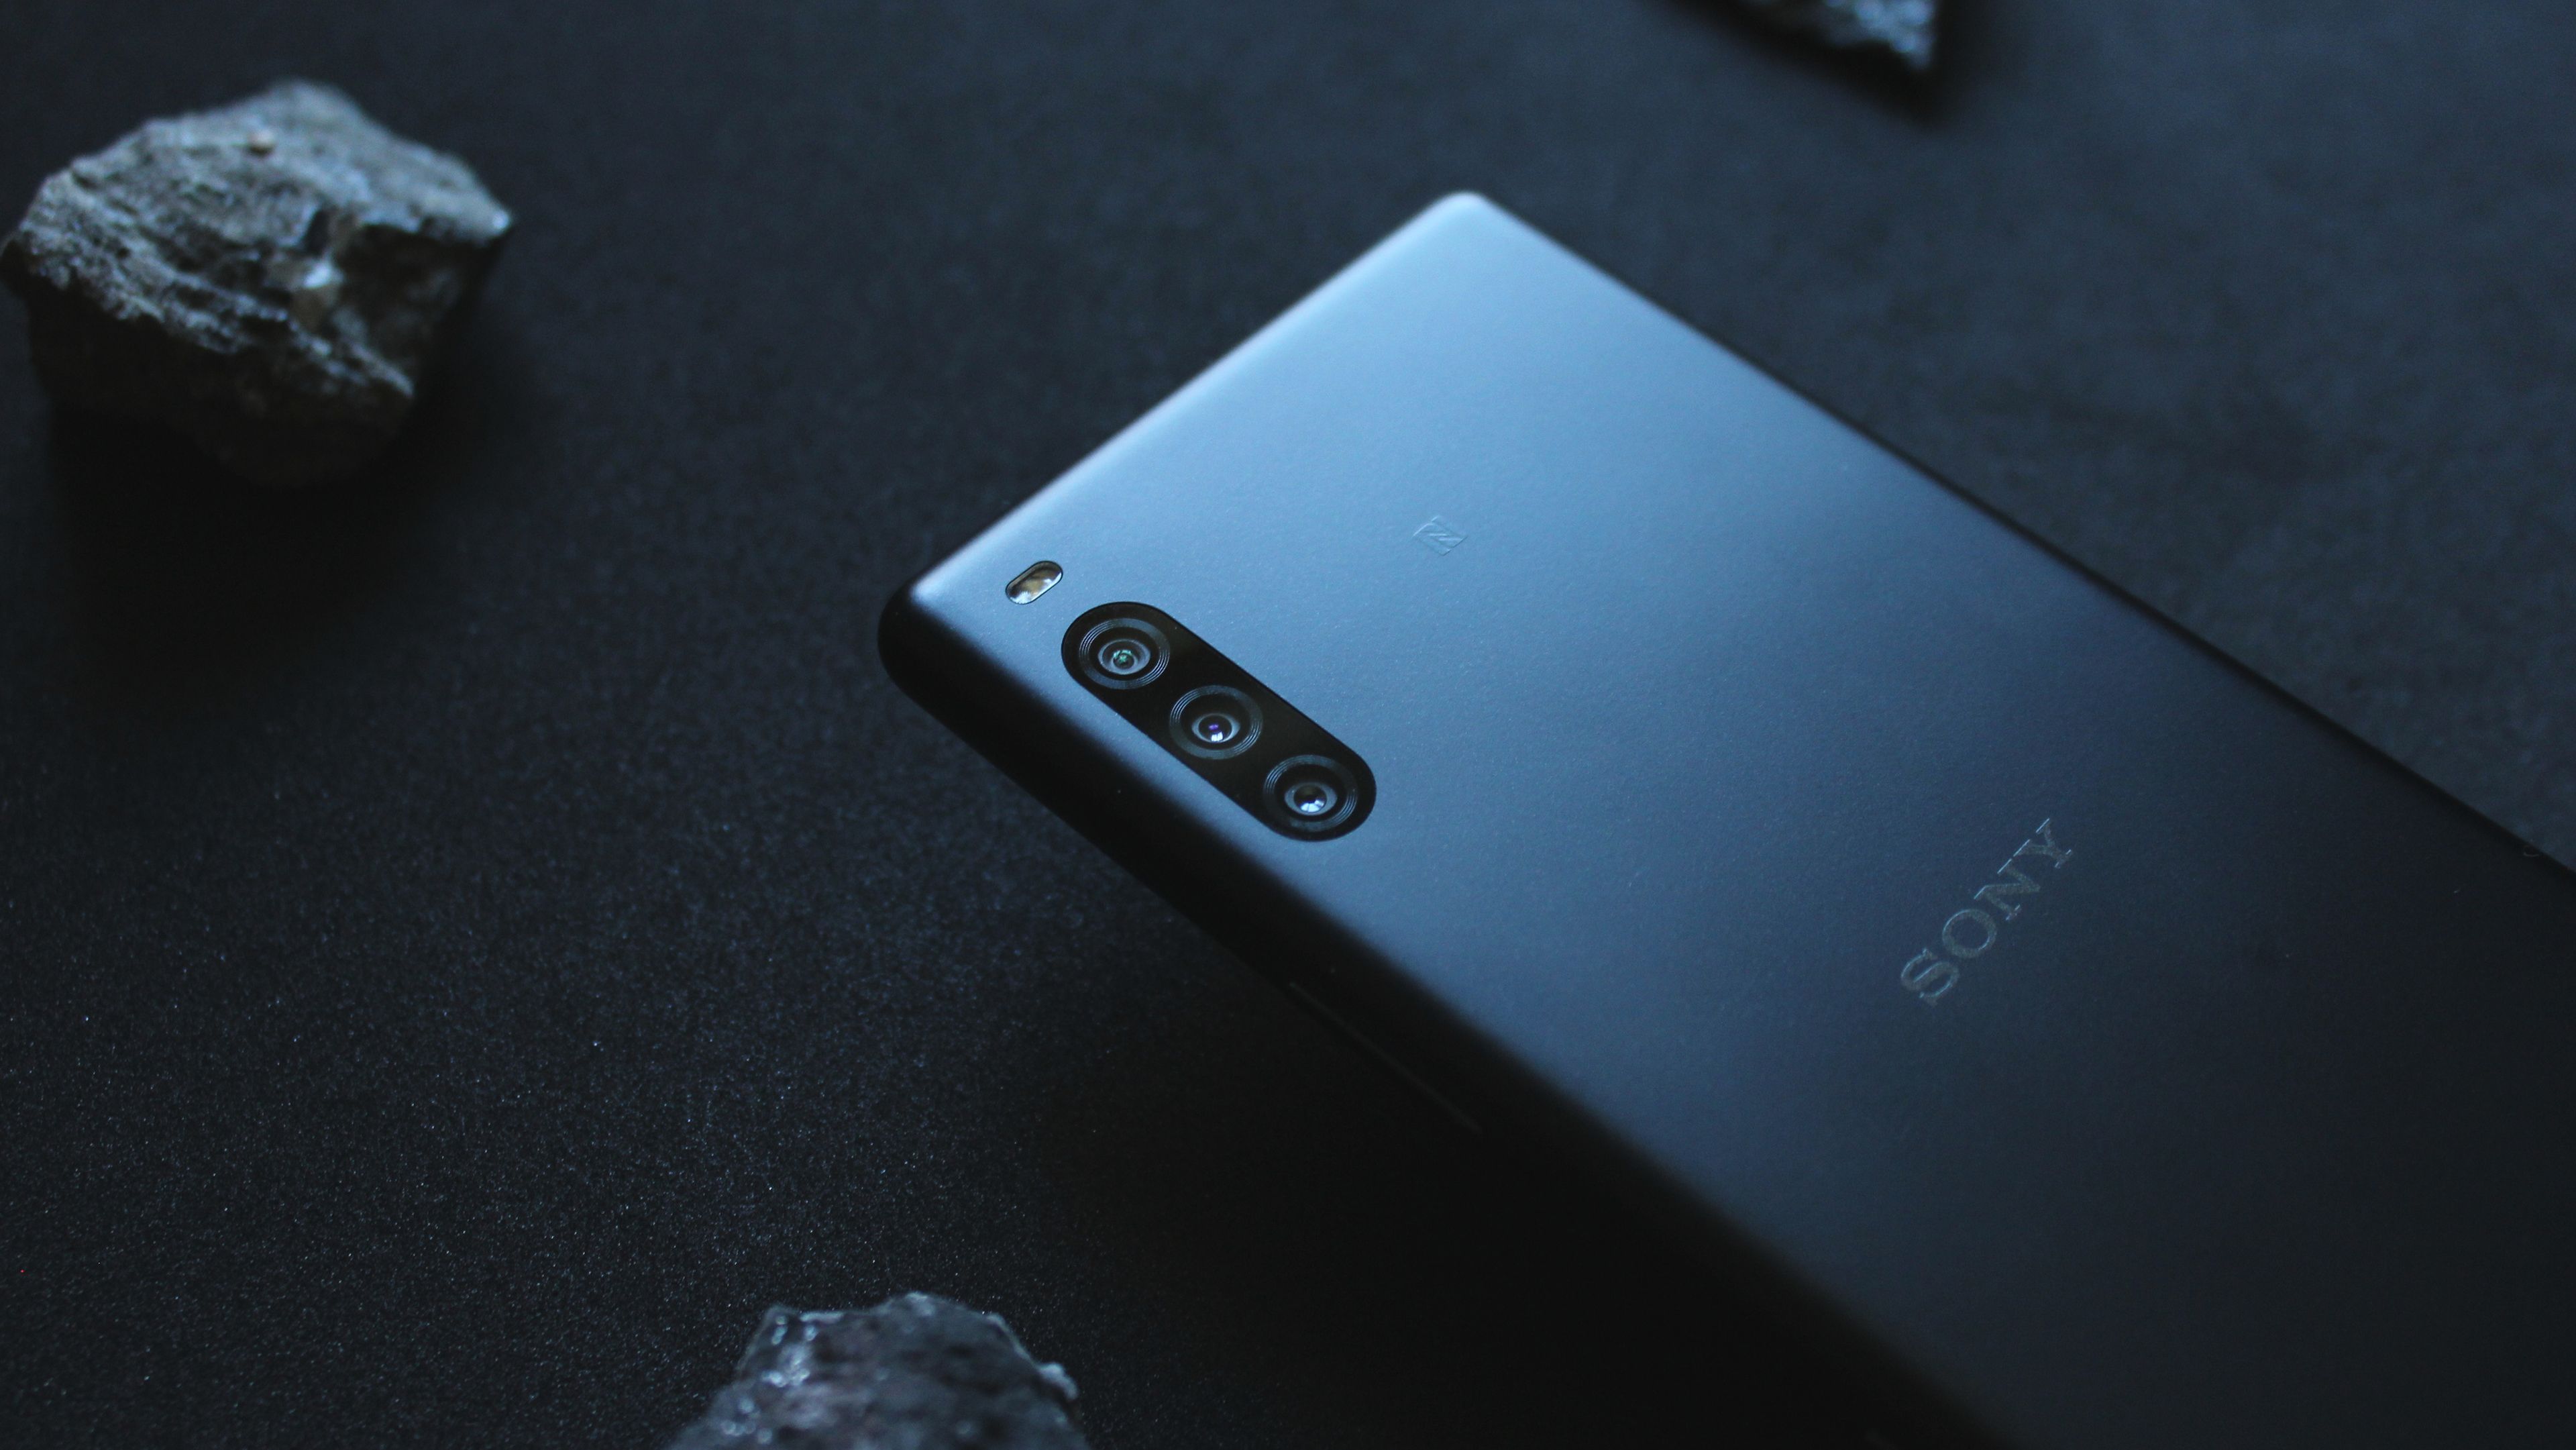 Sony Xperia L: características y valoraciones